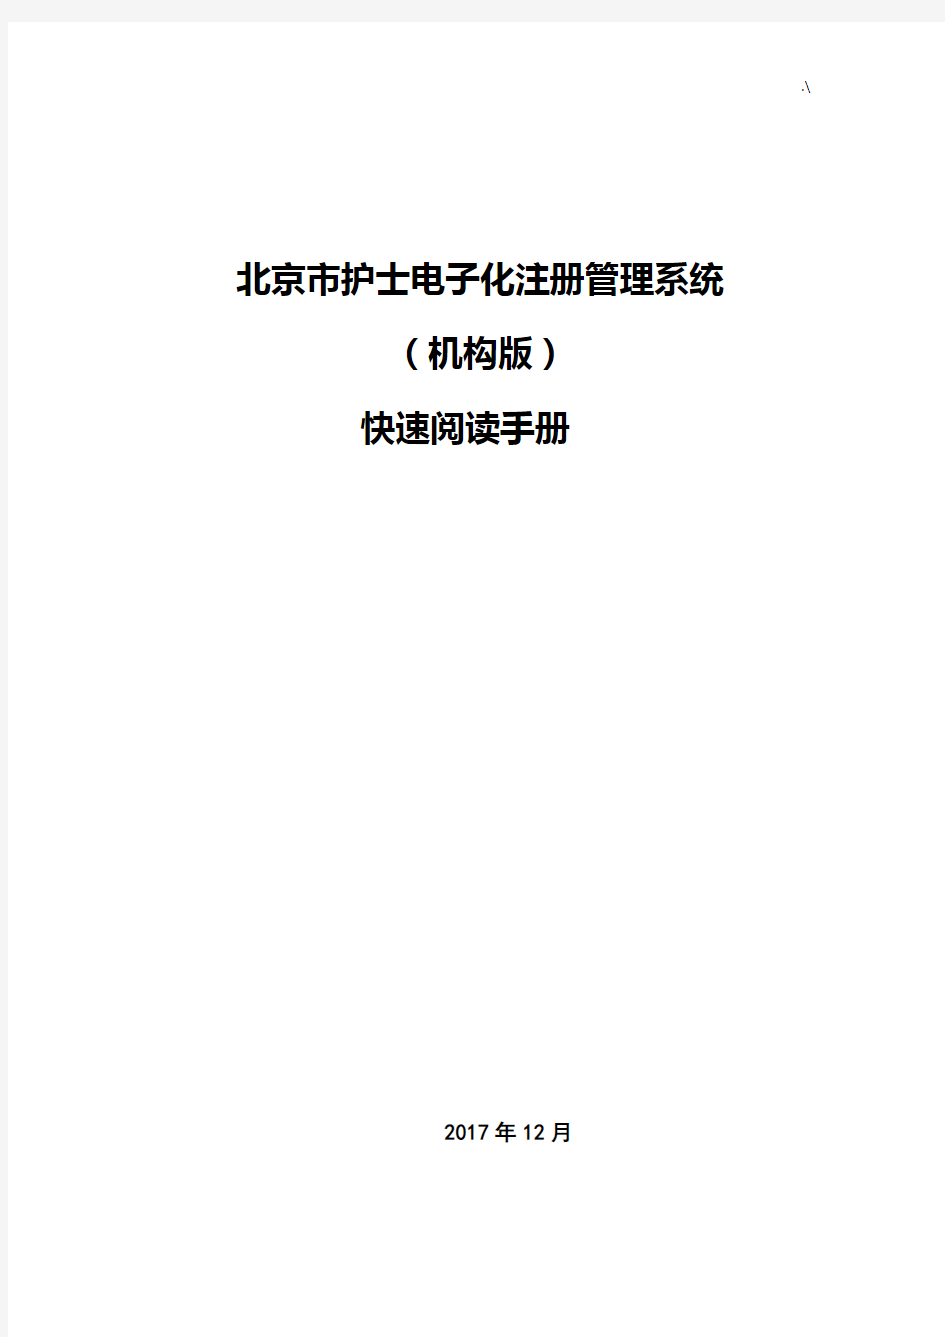 北京地区护士电子化注册管理方案计划系统(机构端)快速阅读材料